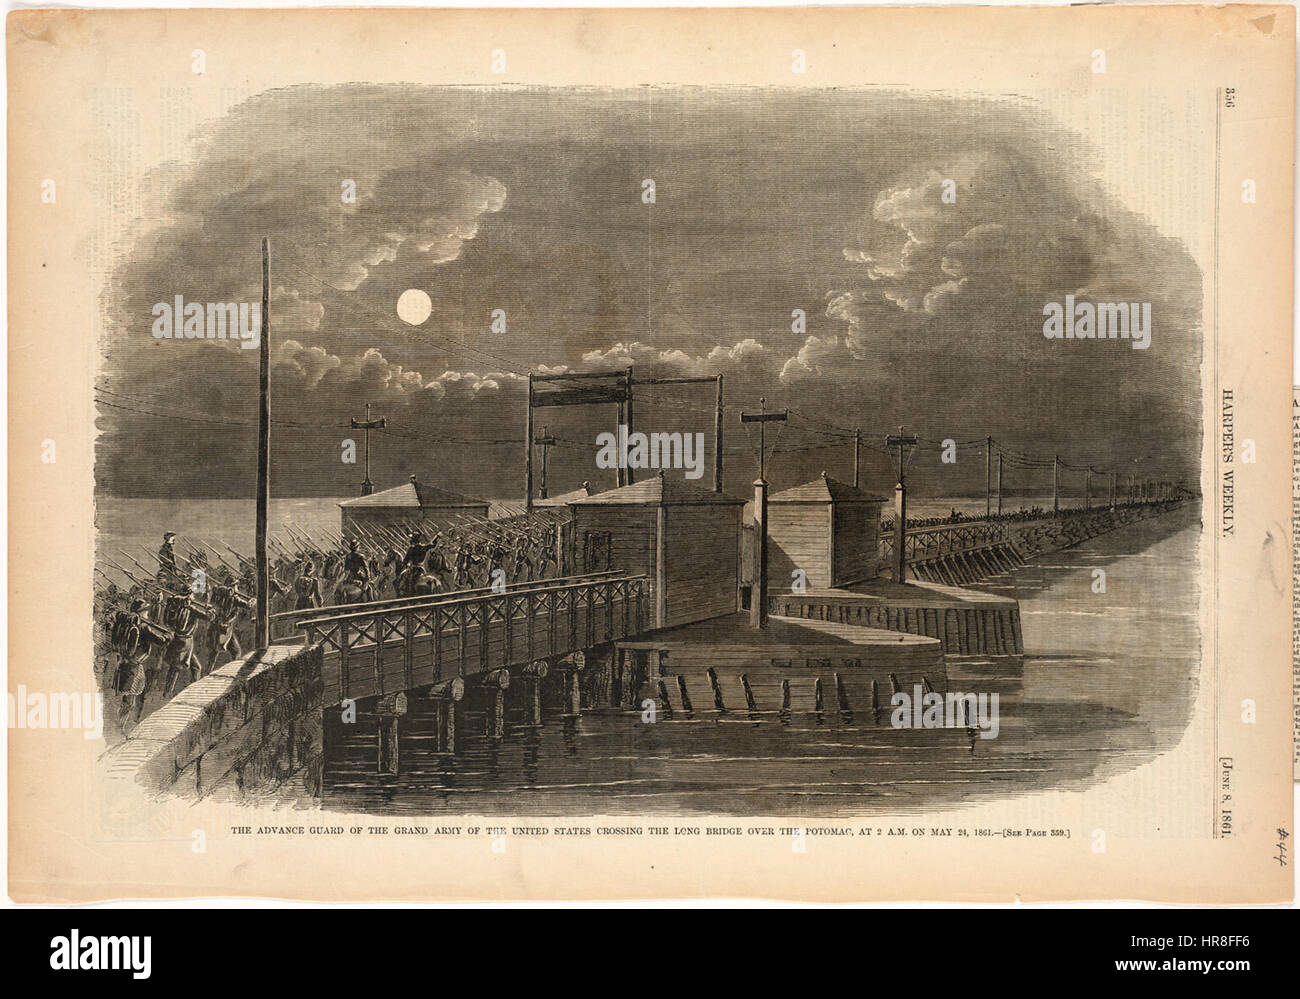 L'anticipo di guardia del grande esercito degli Stati Uniti attraversato il lungo ponte sul Potomac, alle 2 del mattino il 24 maggio 1861 (Boston Public Library) Foto Stock